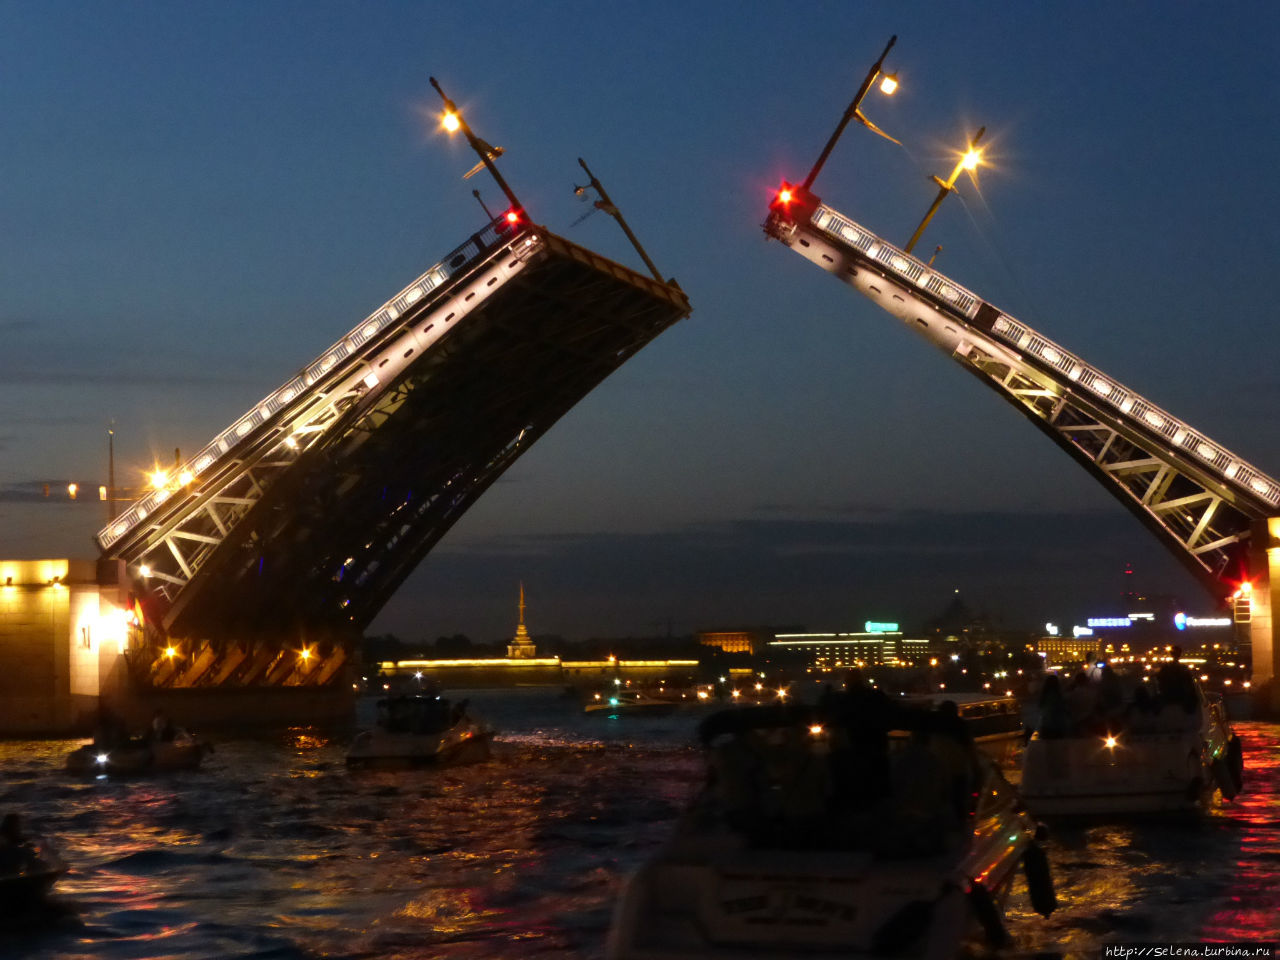 Экскурсии по рекам и каналам Петербурга Санкт-Петербург, Россия